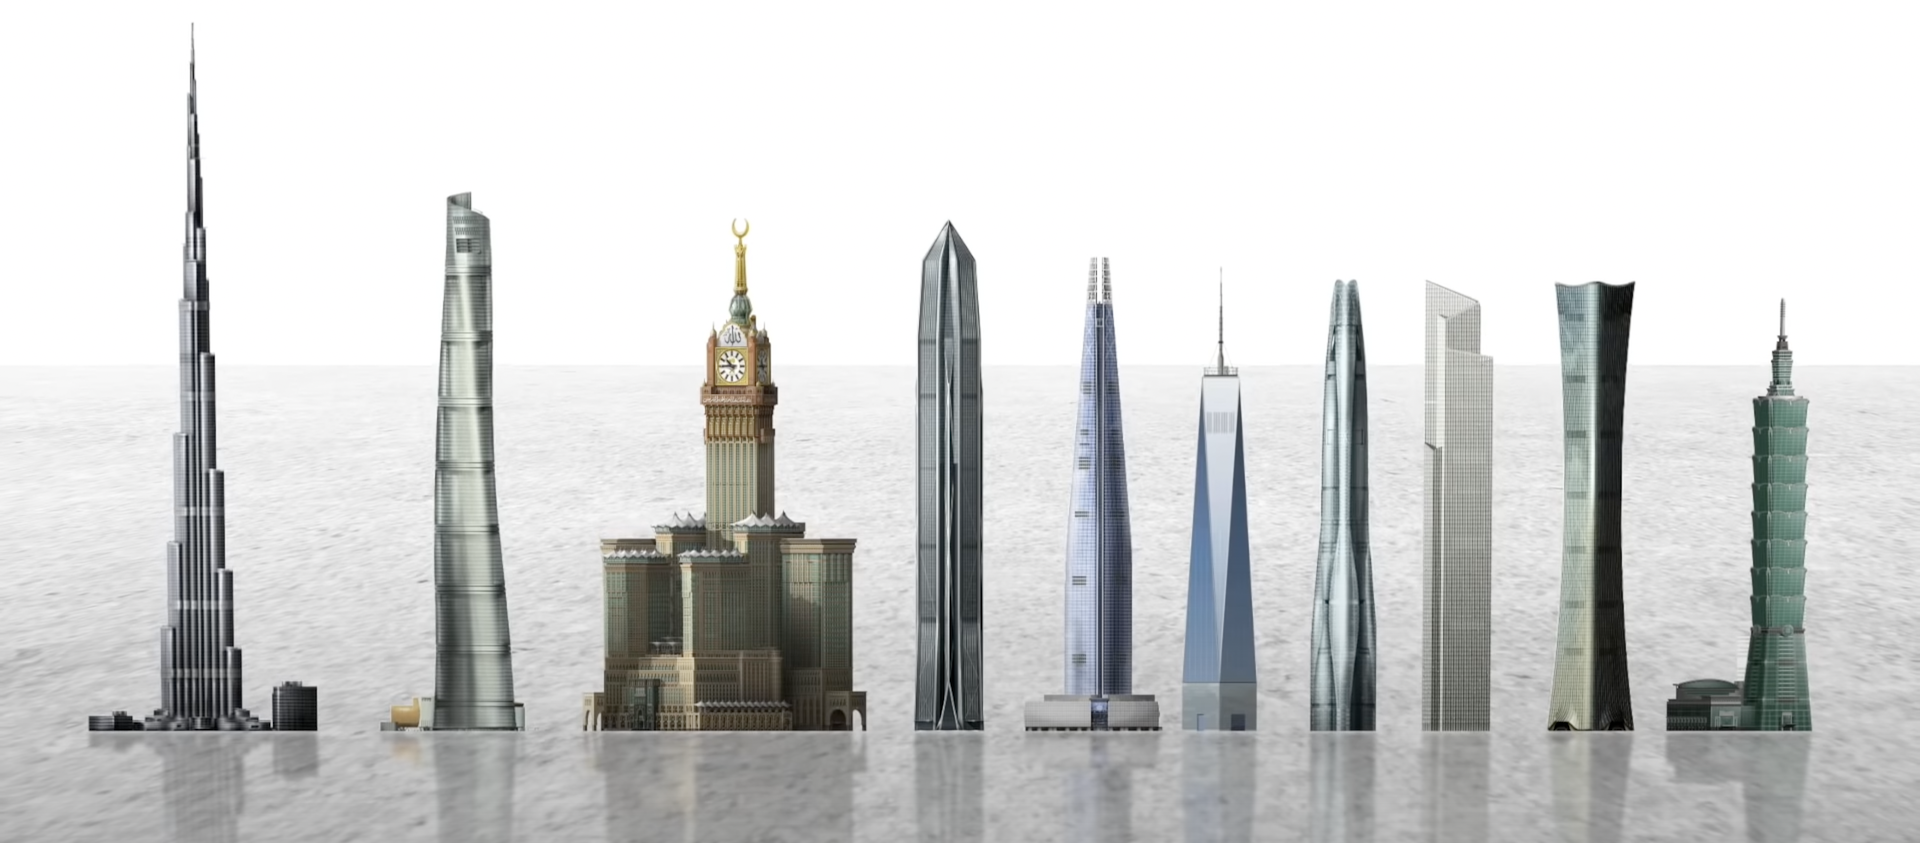 Son los rascacielos más altos los edificios más grandes del mundo? Video —  